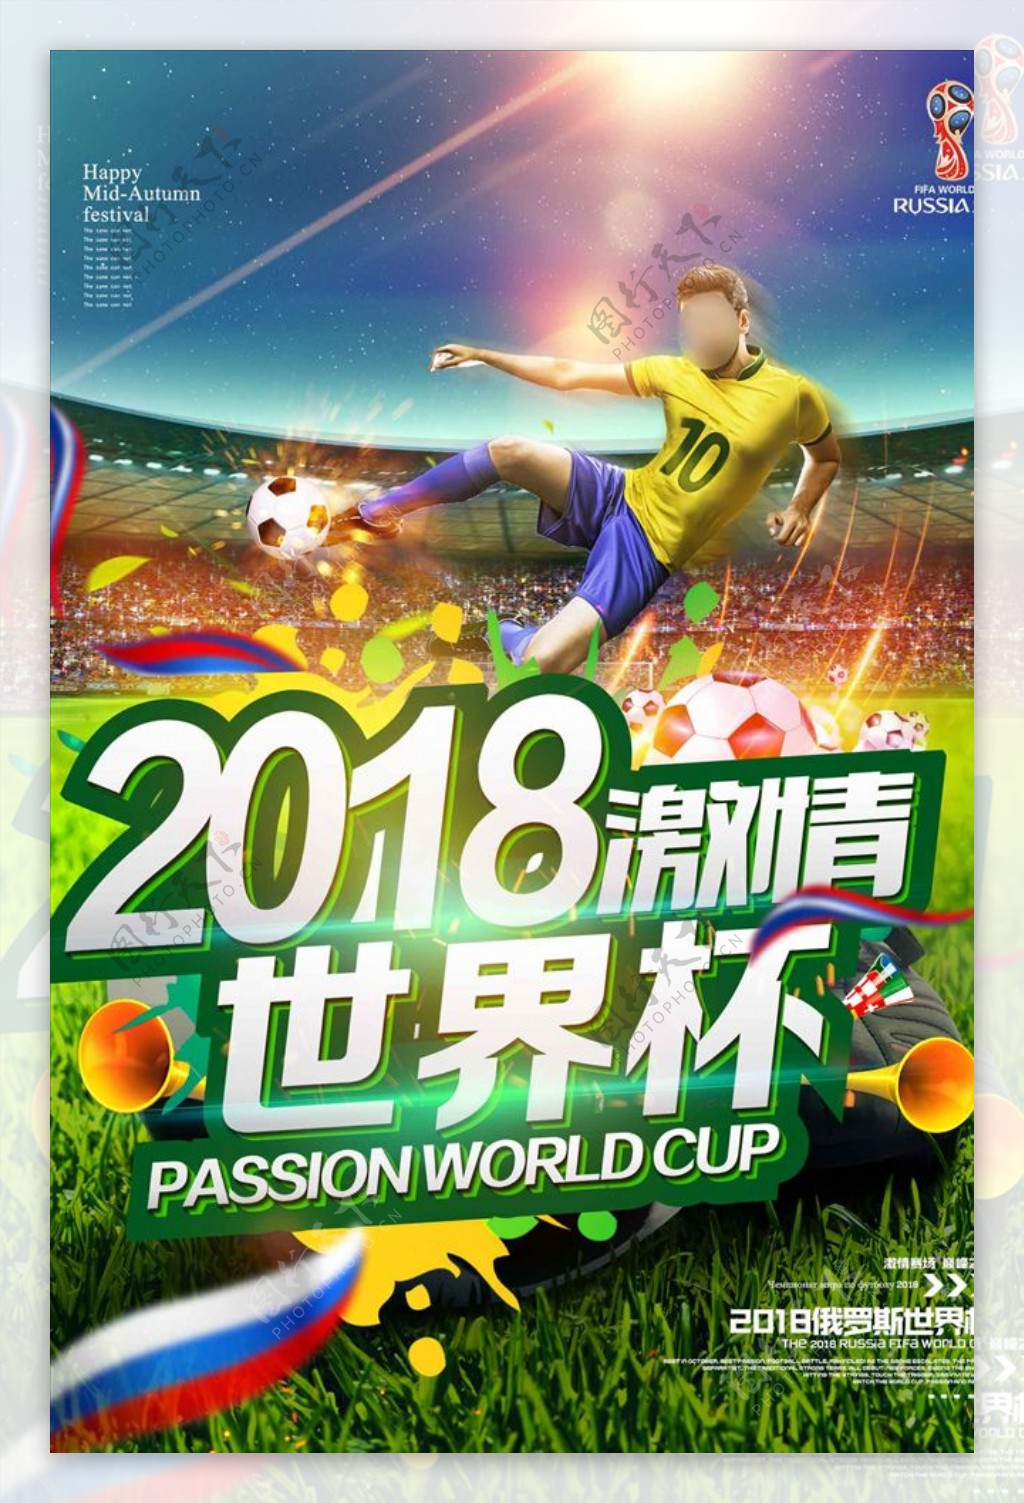 2018激情世界杯创意海报设计